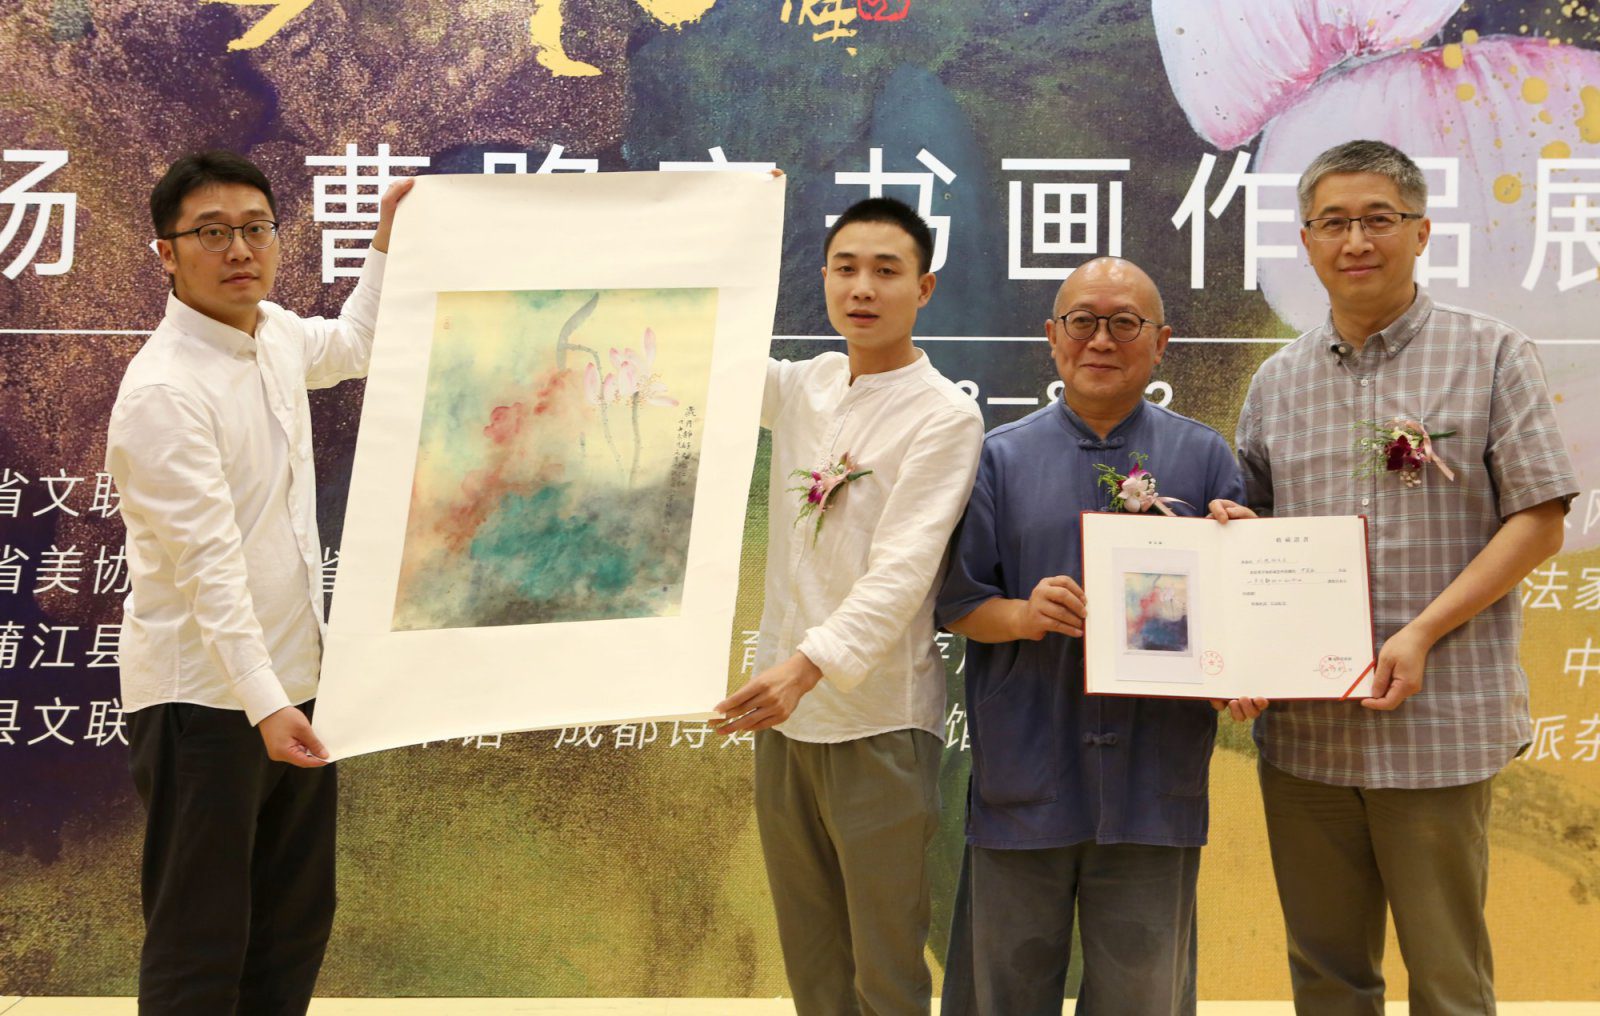 刘德扬、曹路宽书画作品展走进上海韩天衡美术馆